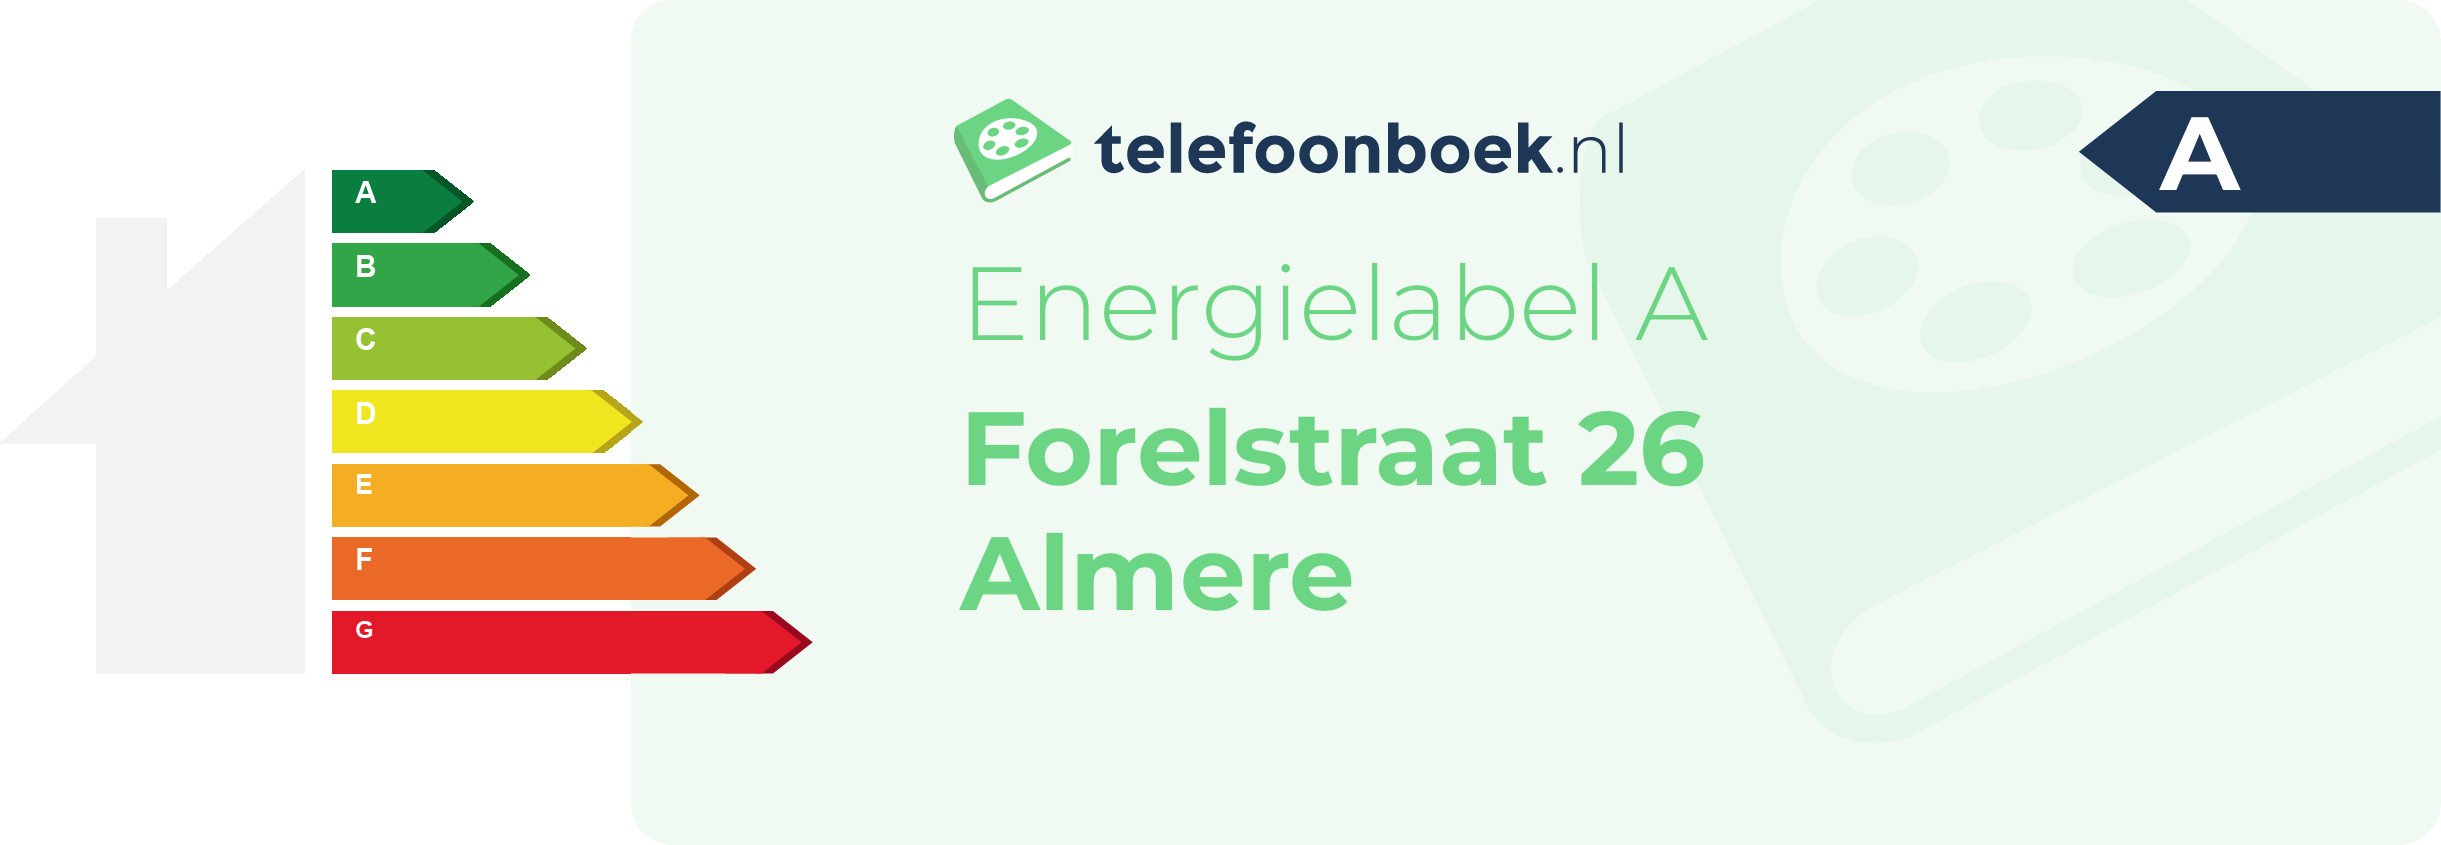 Energielabel Forelstraat 26 Almere